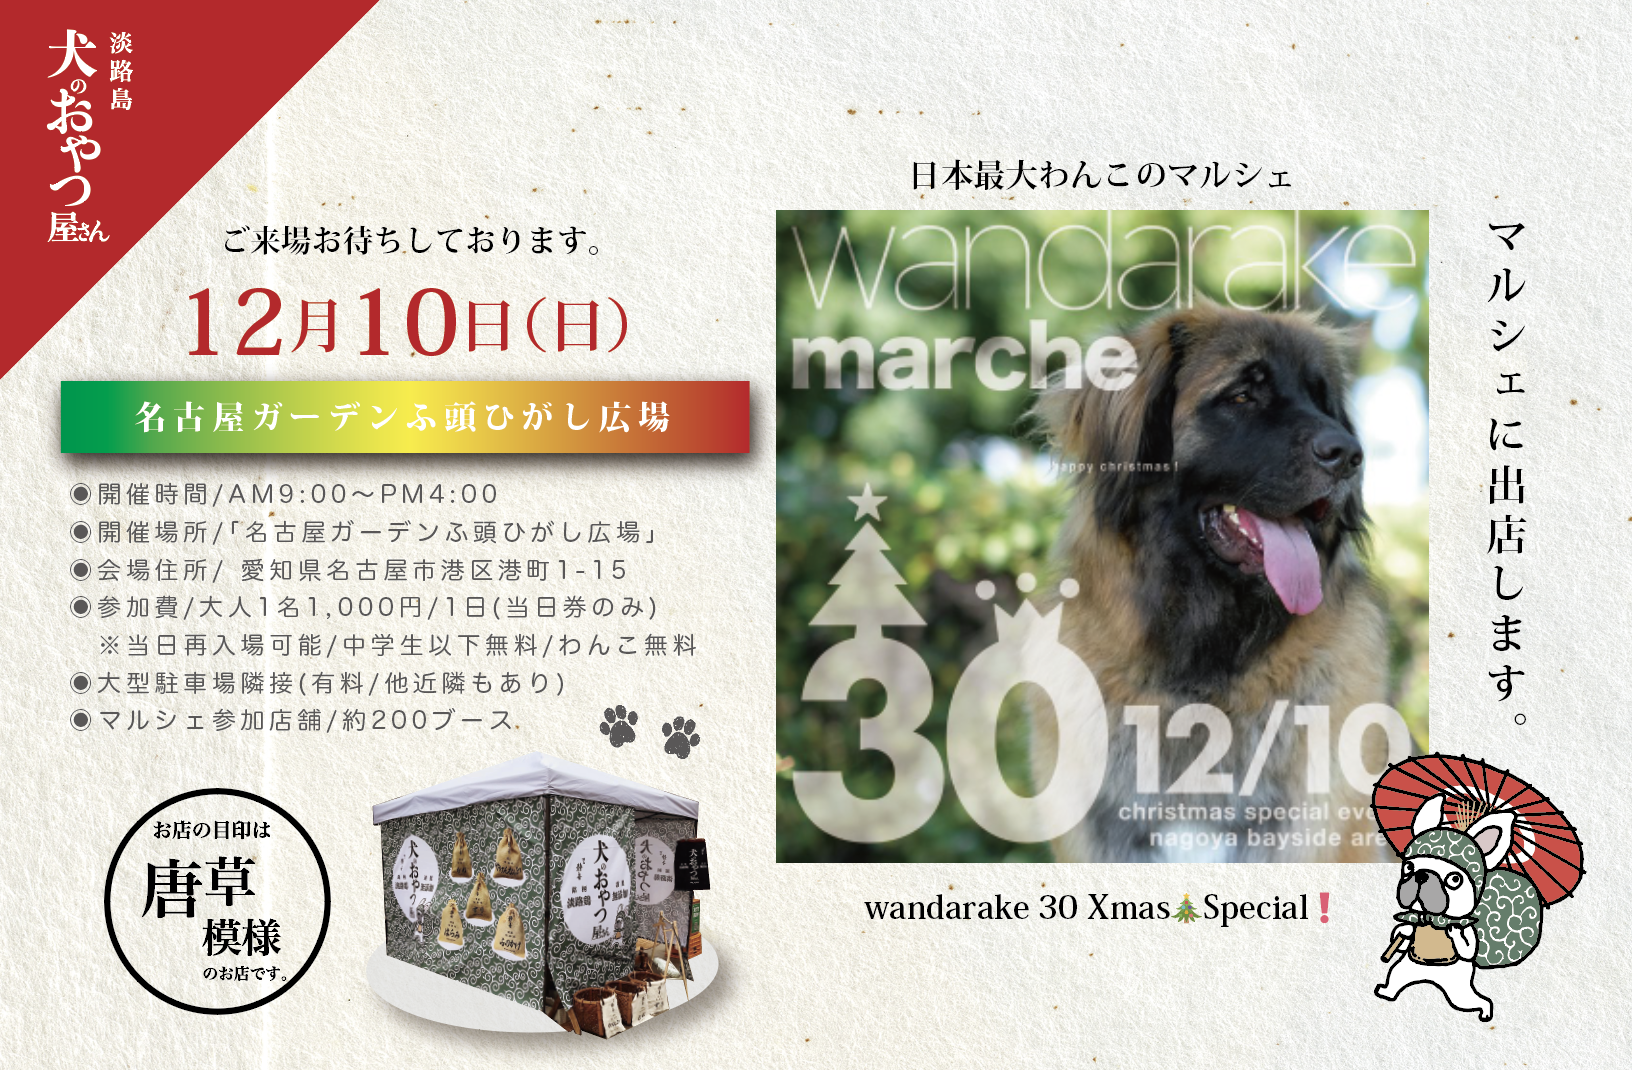 12月10日 @名古屋 「wandarake 30 Xmas🎄Special❗️」に出店します。